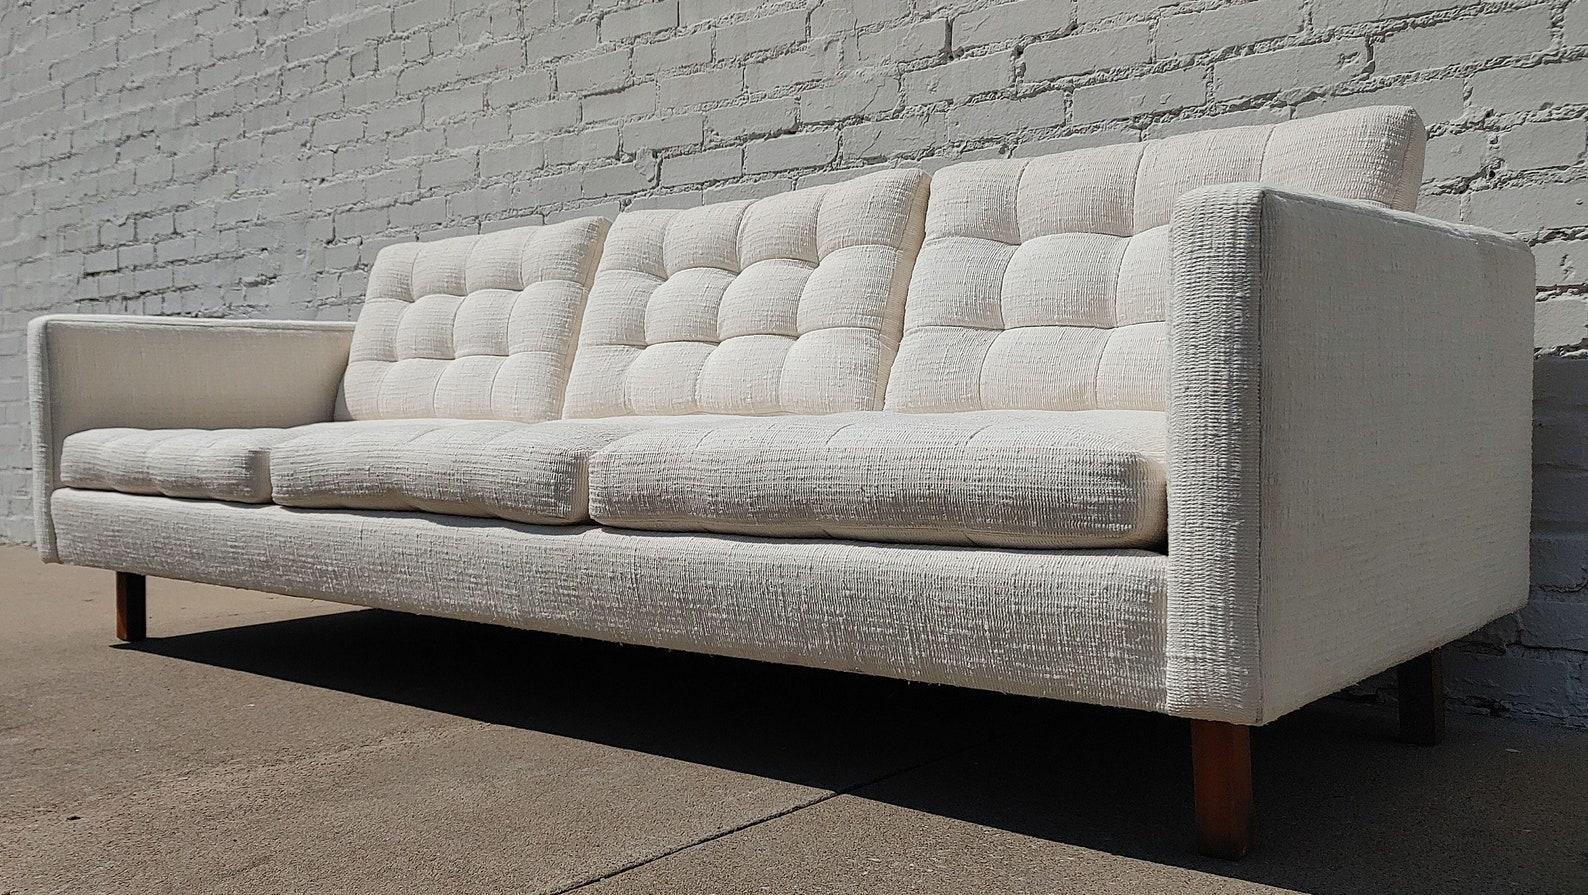 Dänisches modernes getuftetes Sofa, Mid-Century Modern

Überdurchschnittlicher Vintage-Zustand und strukturell gesund. Die Polsterung ist sehr sauber, nicht perfekt, sieht aber fast wie neu aus. Die Bilder im Außenbereich können etwas dunkler oder